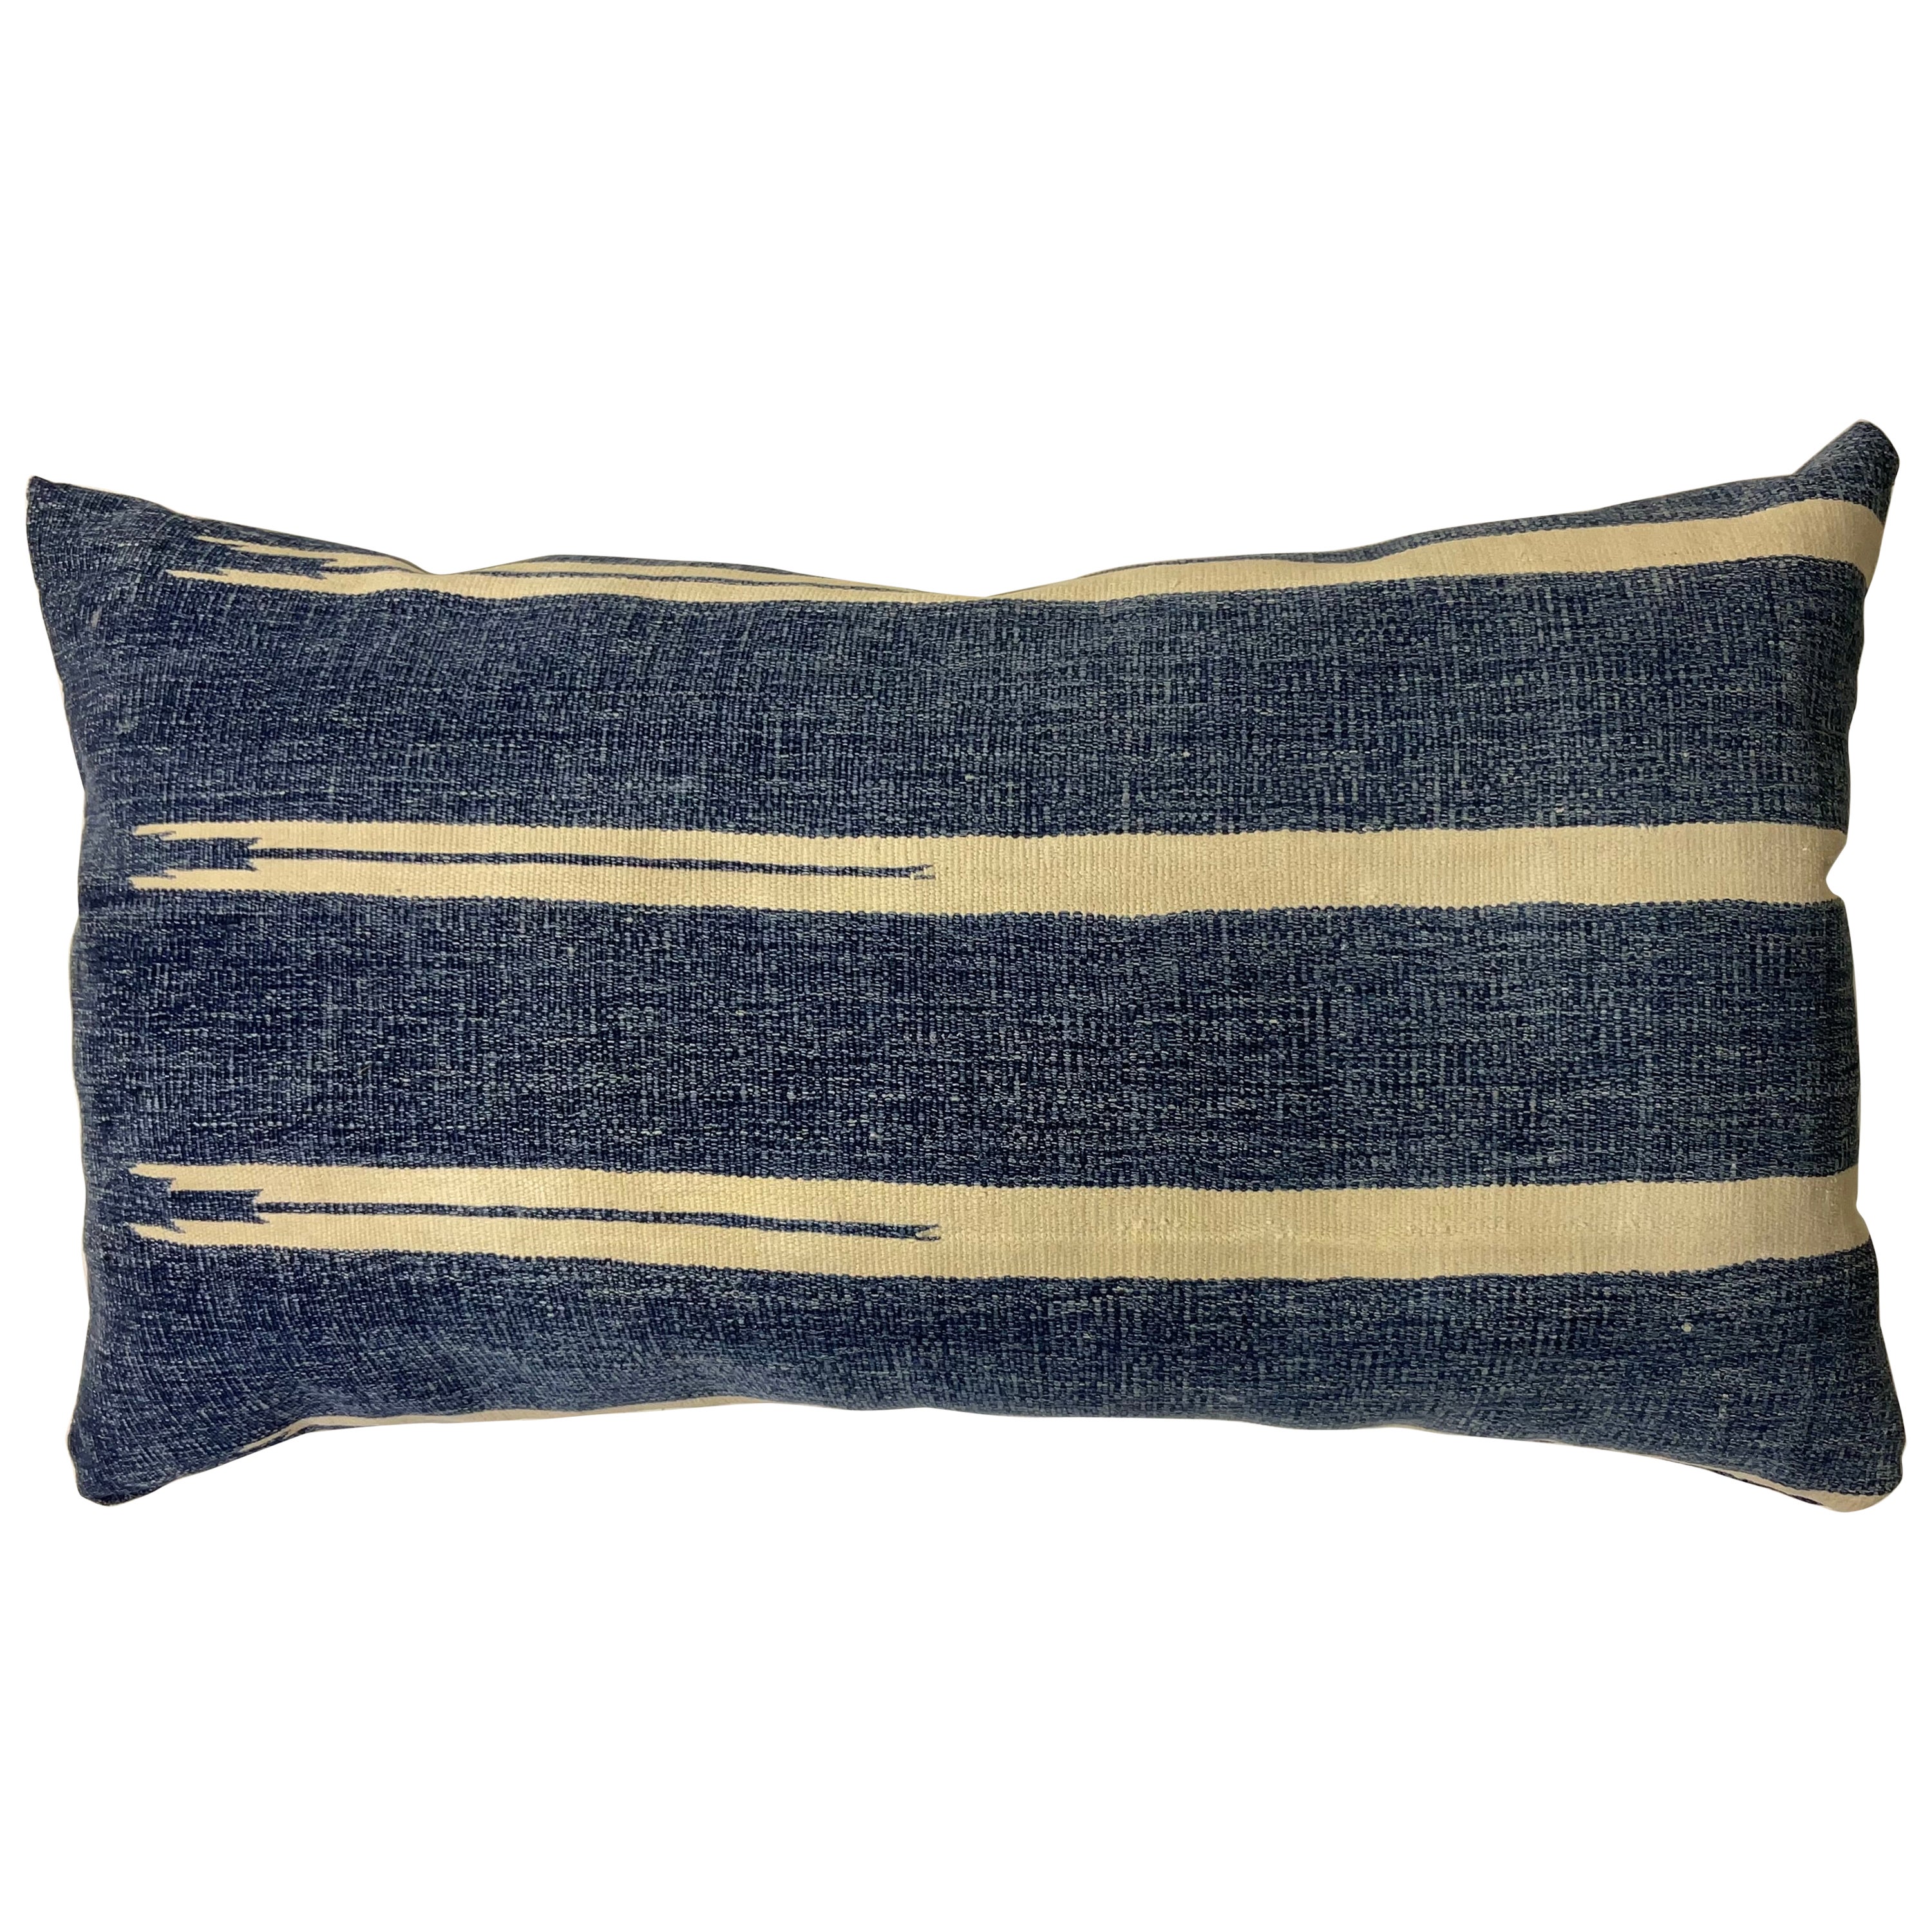 Single  Flat Weave Antique textile Pillow